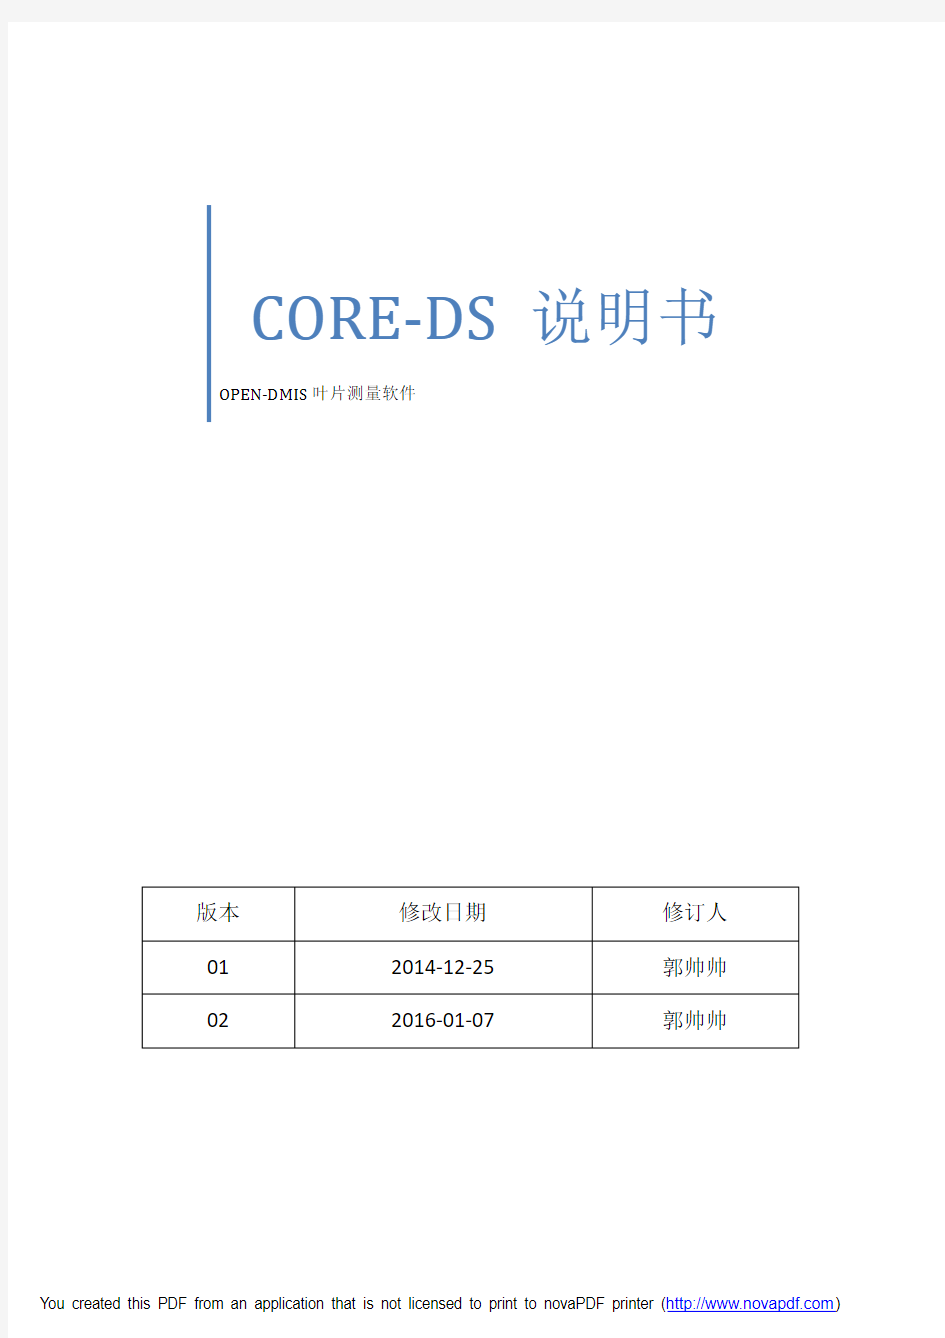 CORE-DS培训简要说明_v02